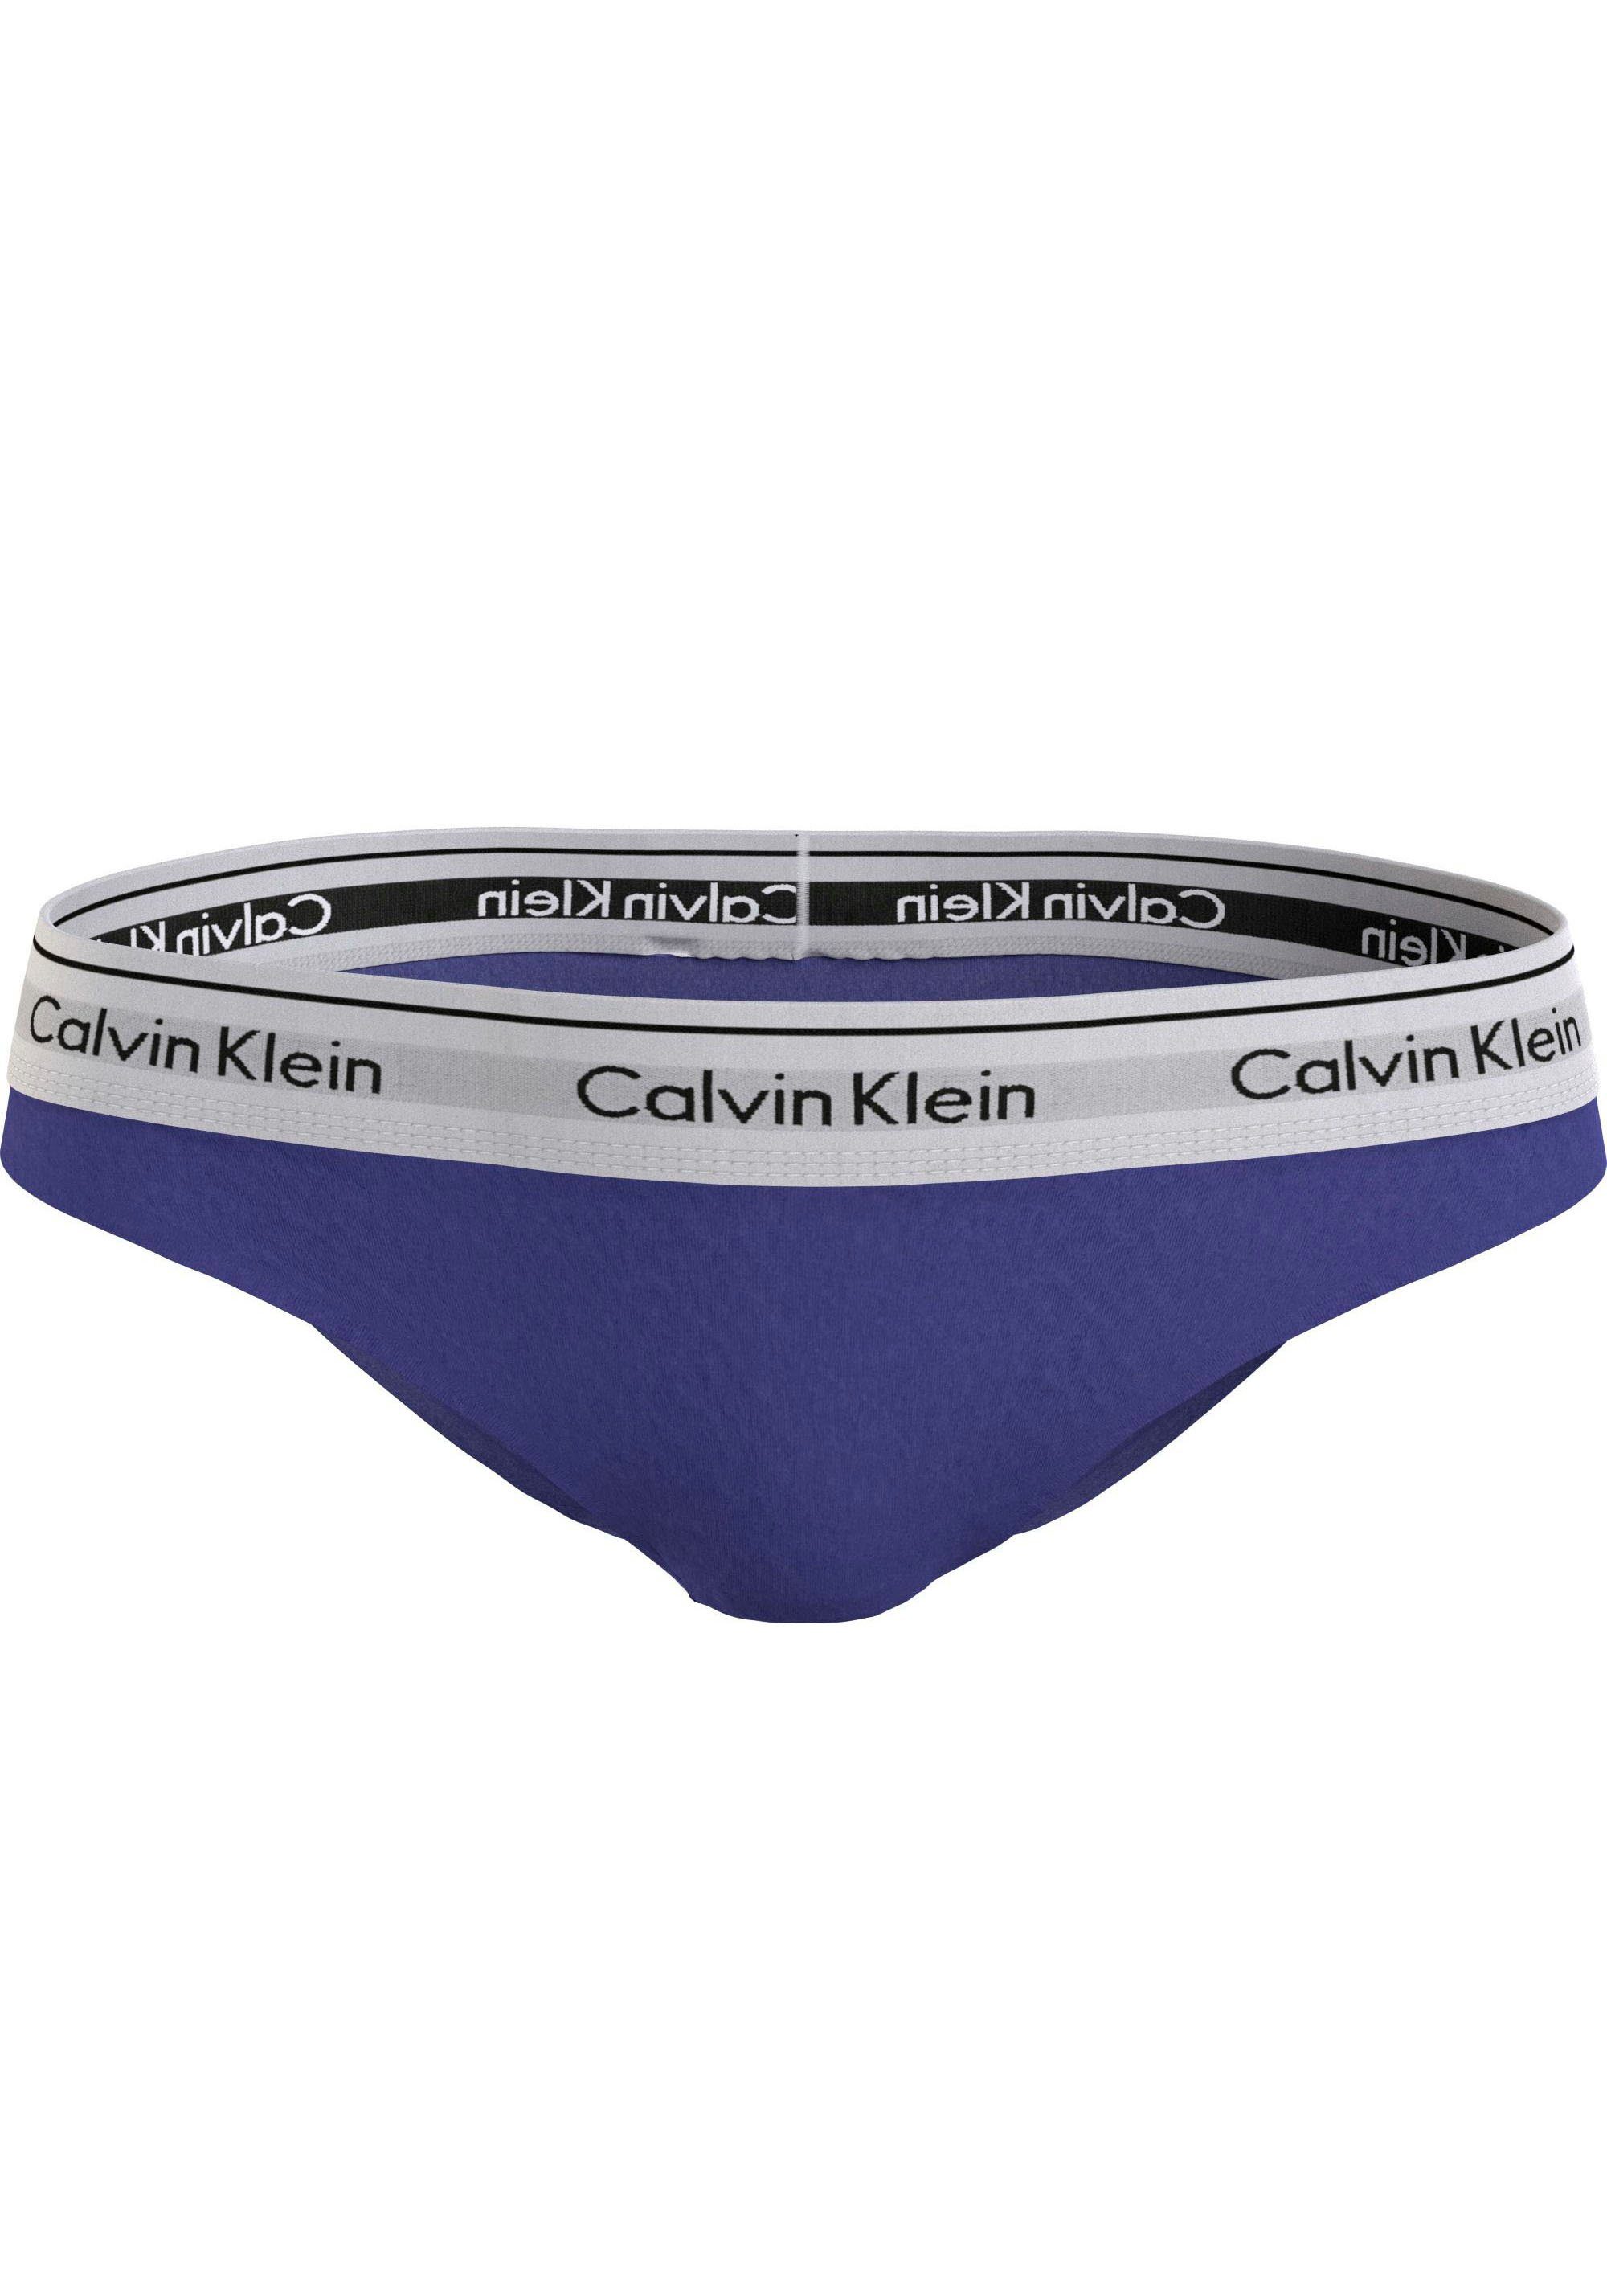 Underwear Klein Bikinislip blau Calvin klassischem Logo BIKINI mit